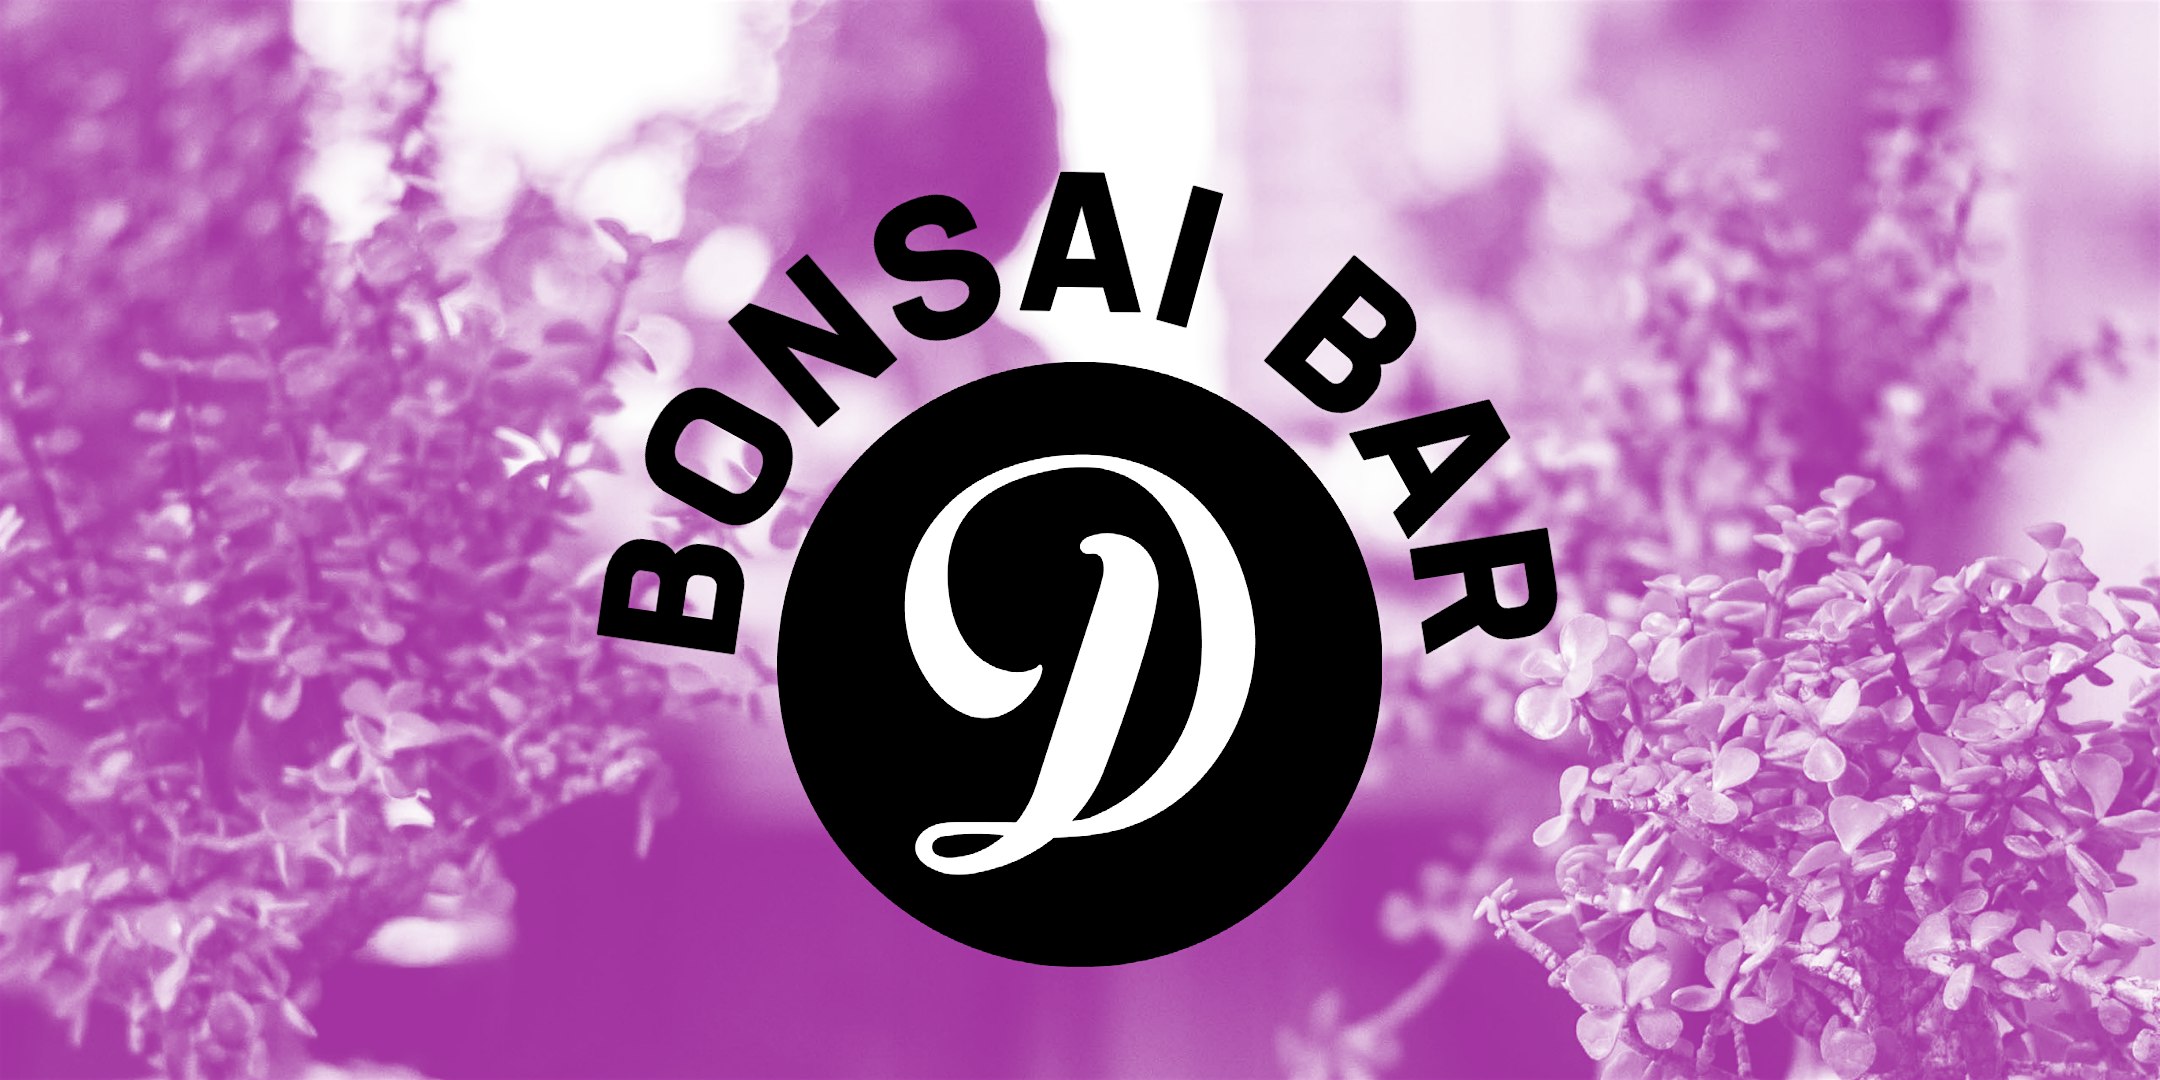 Bonsai Bar @ Dorchester Brewing